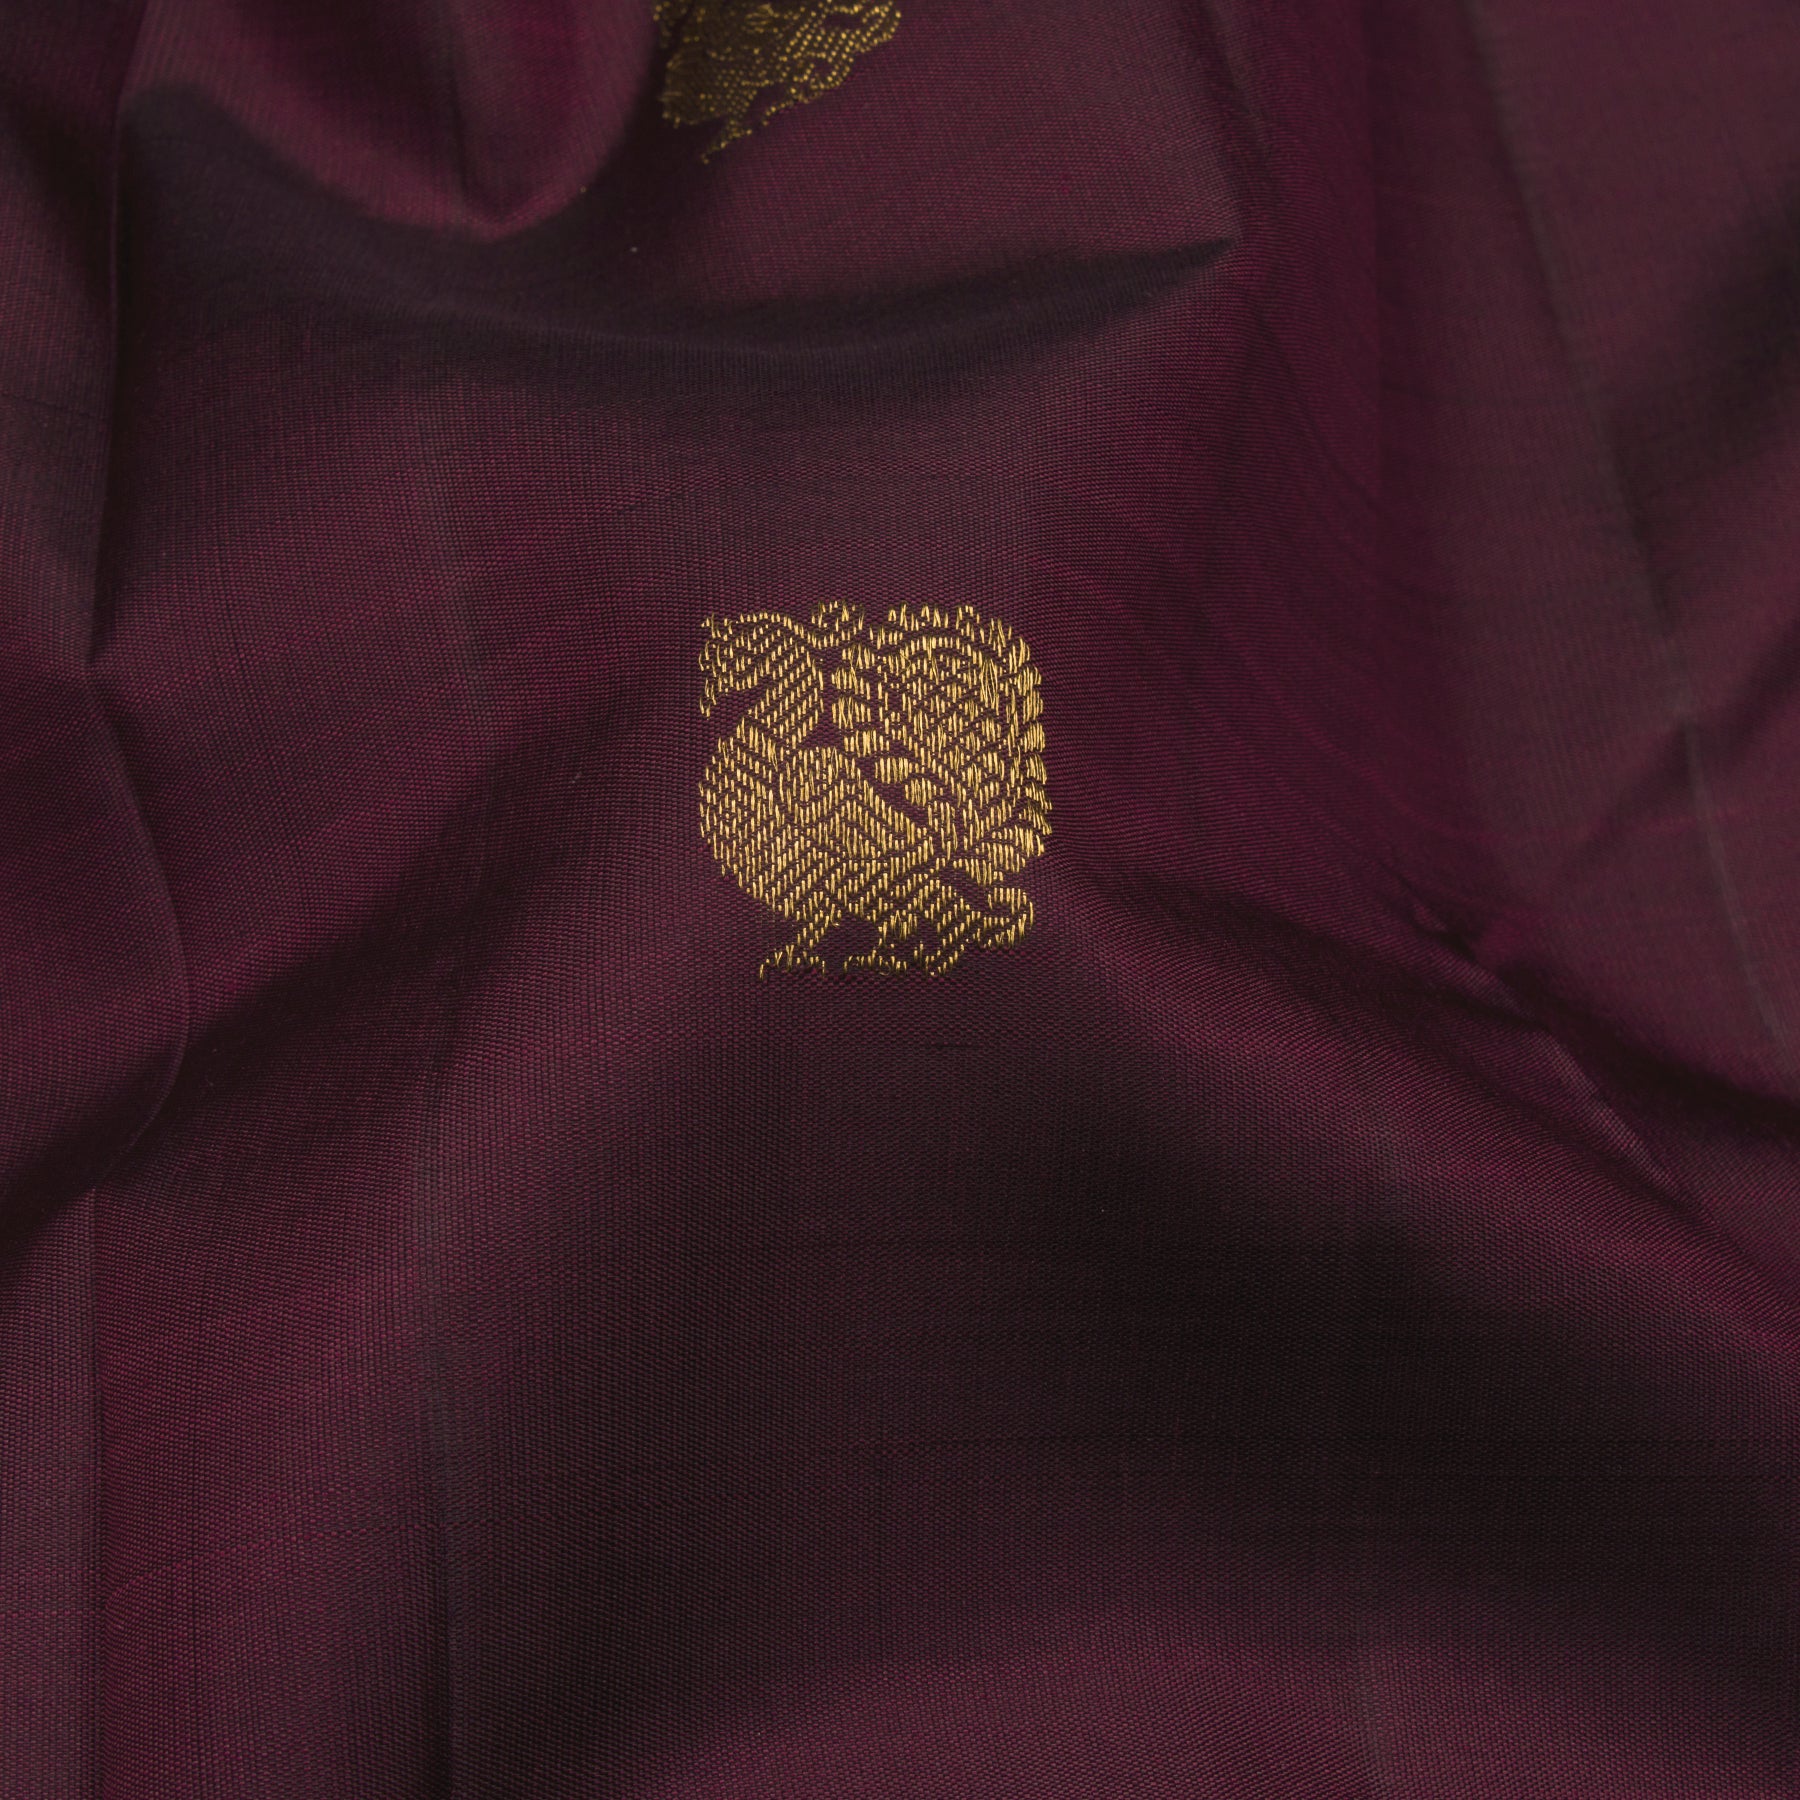 Kanakavalli Kanjivaram Silk Sari 23-595-HS001-11389 - Fabric View